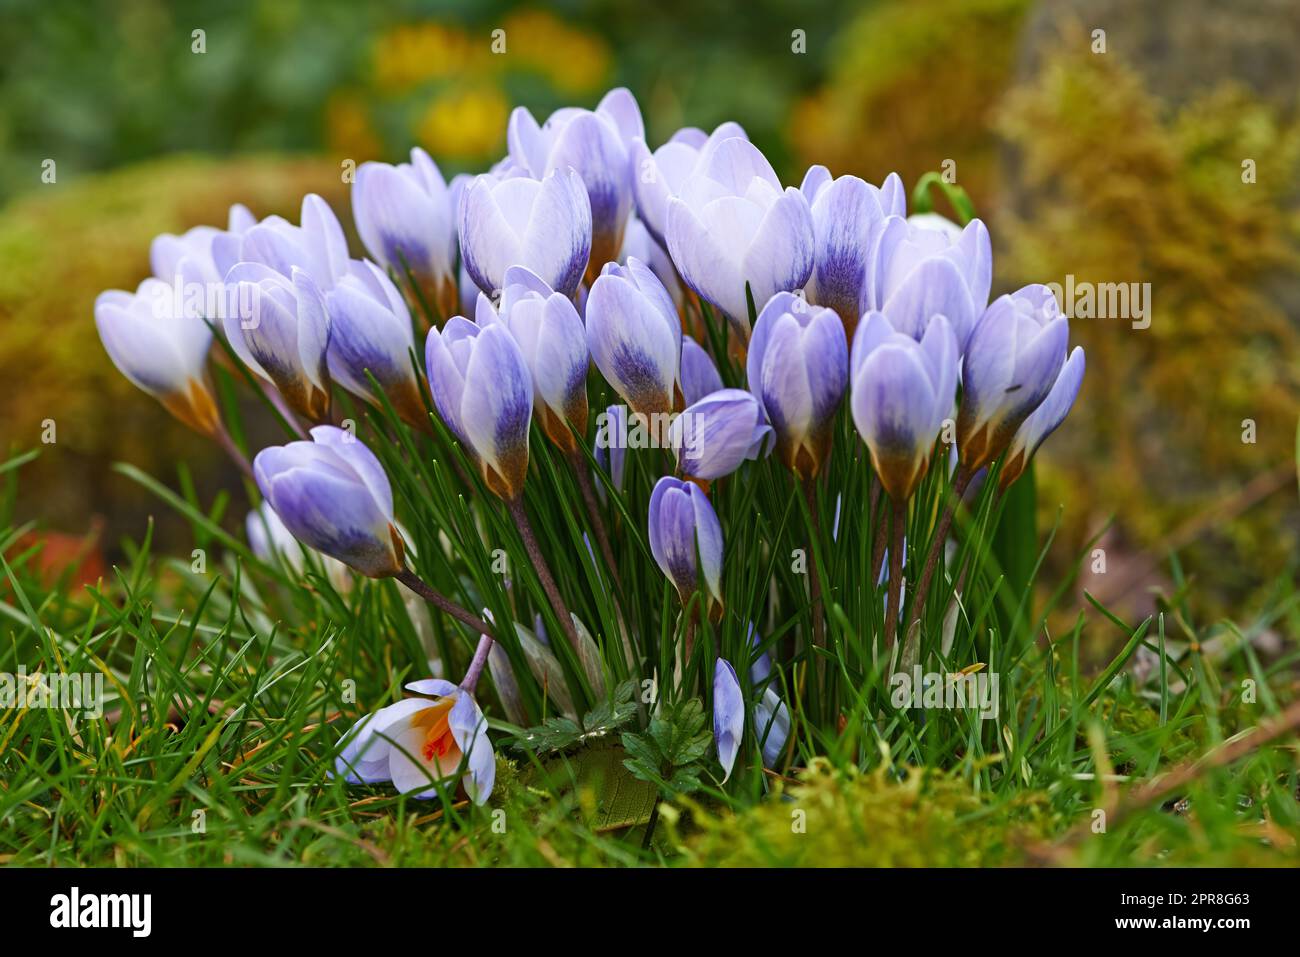 Gros plan de fleurs de crocus fraîches qui poussent sur une pelouse ou un jardin. Un bouquet de fleurs violettes dans une forêt, ajoutant à la beauté dans la nature et l'ambiance paisible de l'extérieur. Flowerhead fleurit dans la cour zen Banque D'Images